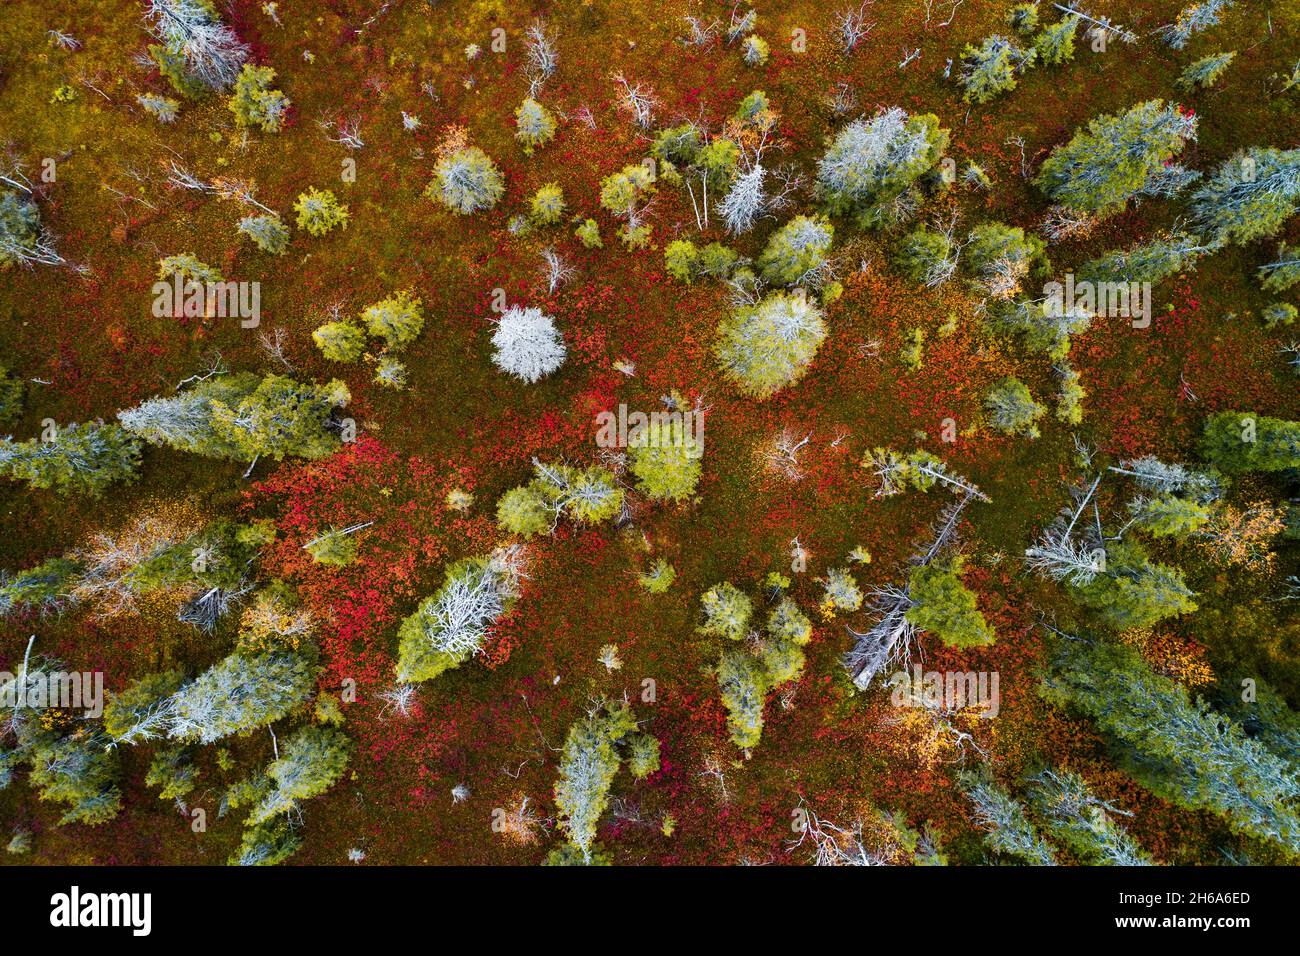 Une vue aérienne du feuillage d'automne coloré dans le parc national de Riisitunturi avec une belle forêt de taïga et des épinettes mortes dans le nord de la Finlande. Banque D'Images